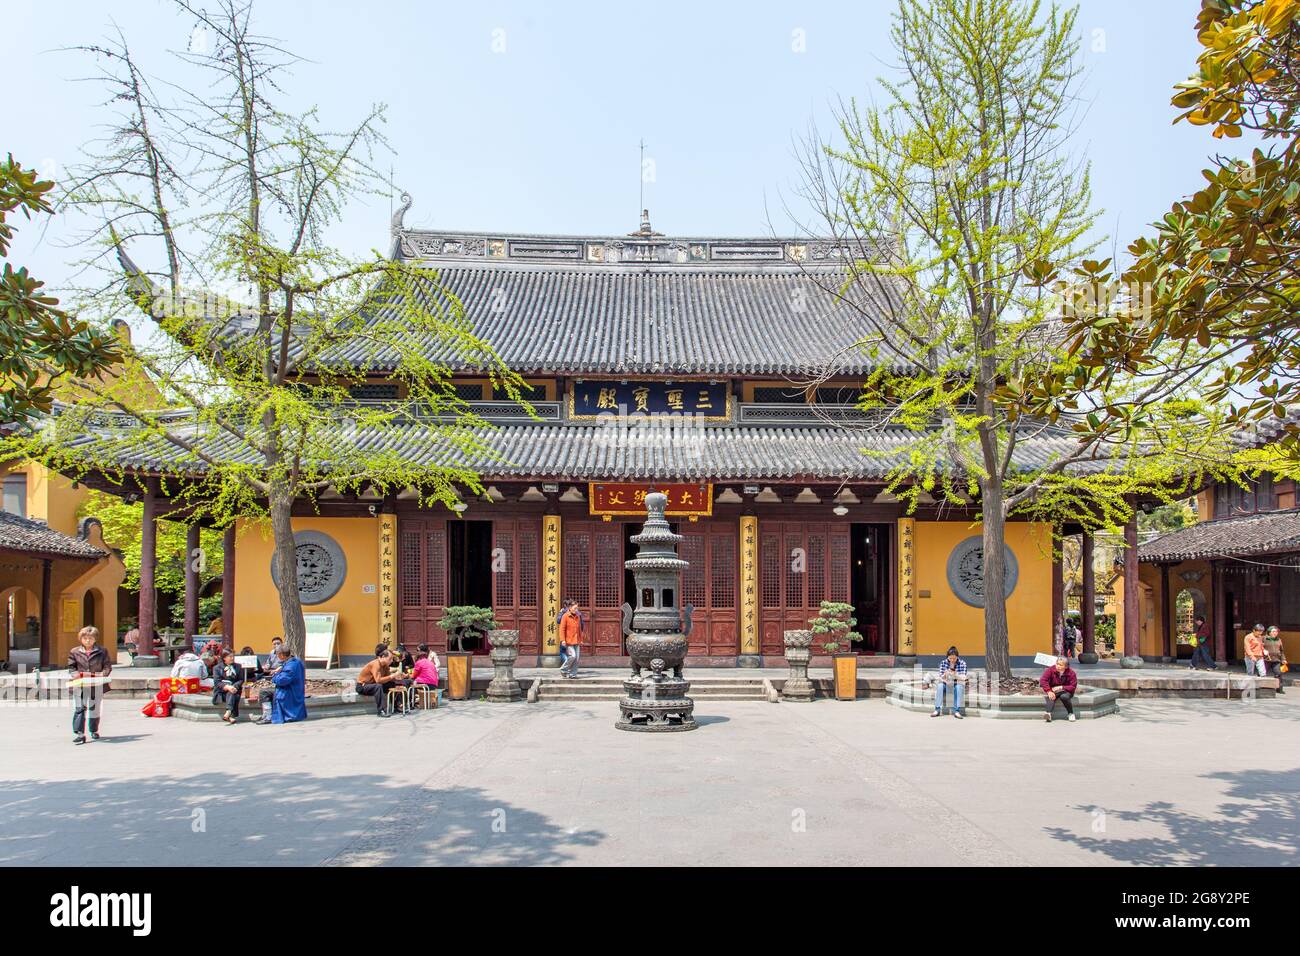 Shanghai, China - 9 de abril de 2014: Edificios del templo budista Longhua en Shanghai Foto de stock